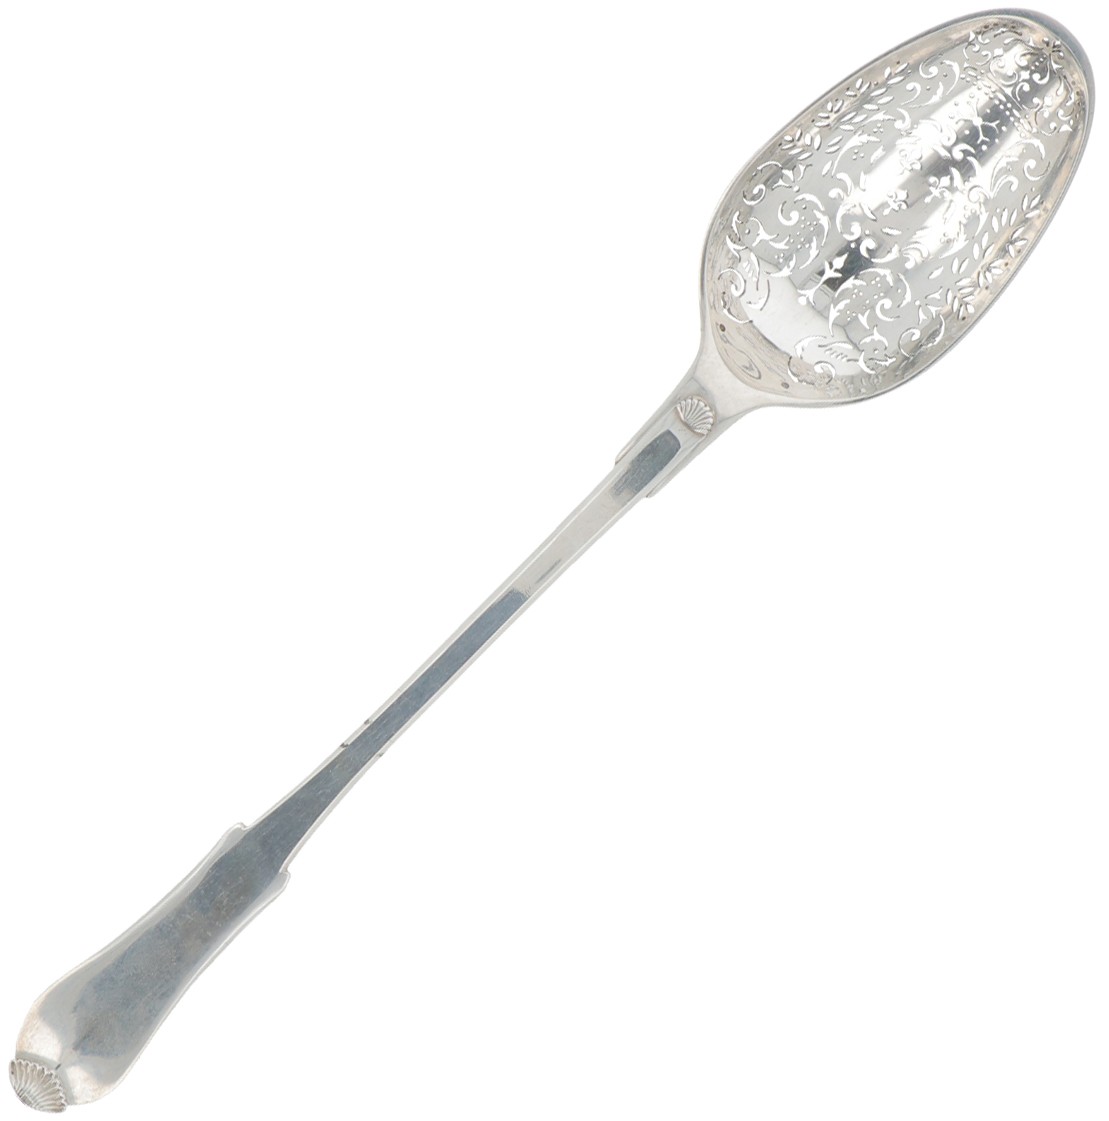 Wet fruit spoon silver.